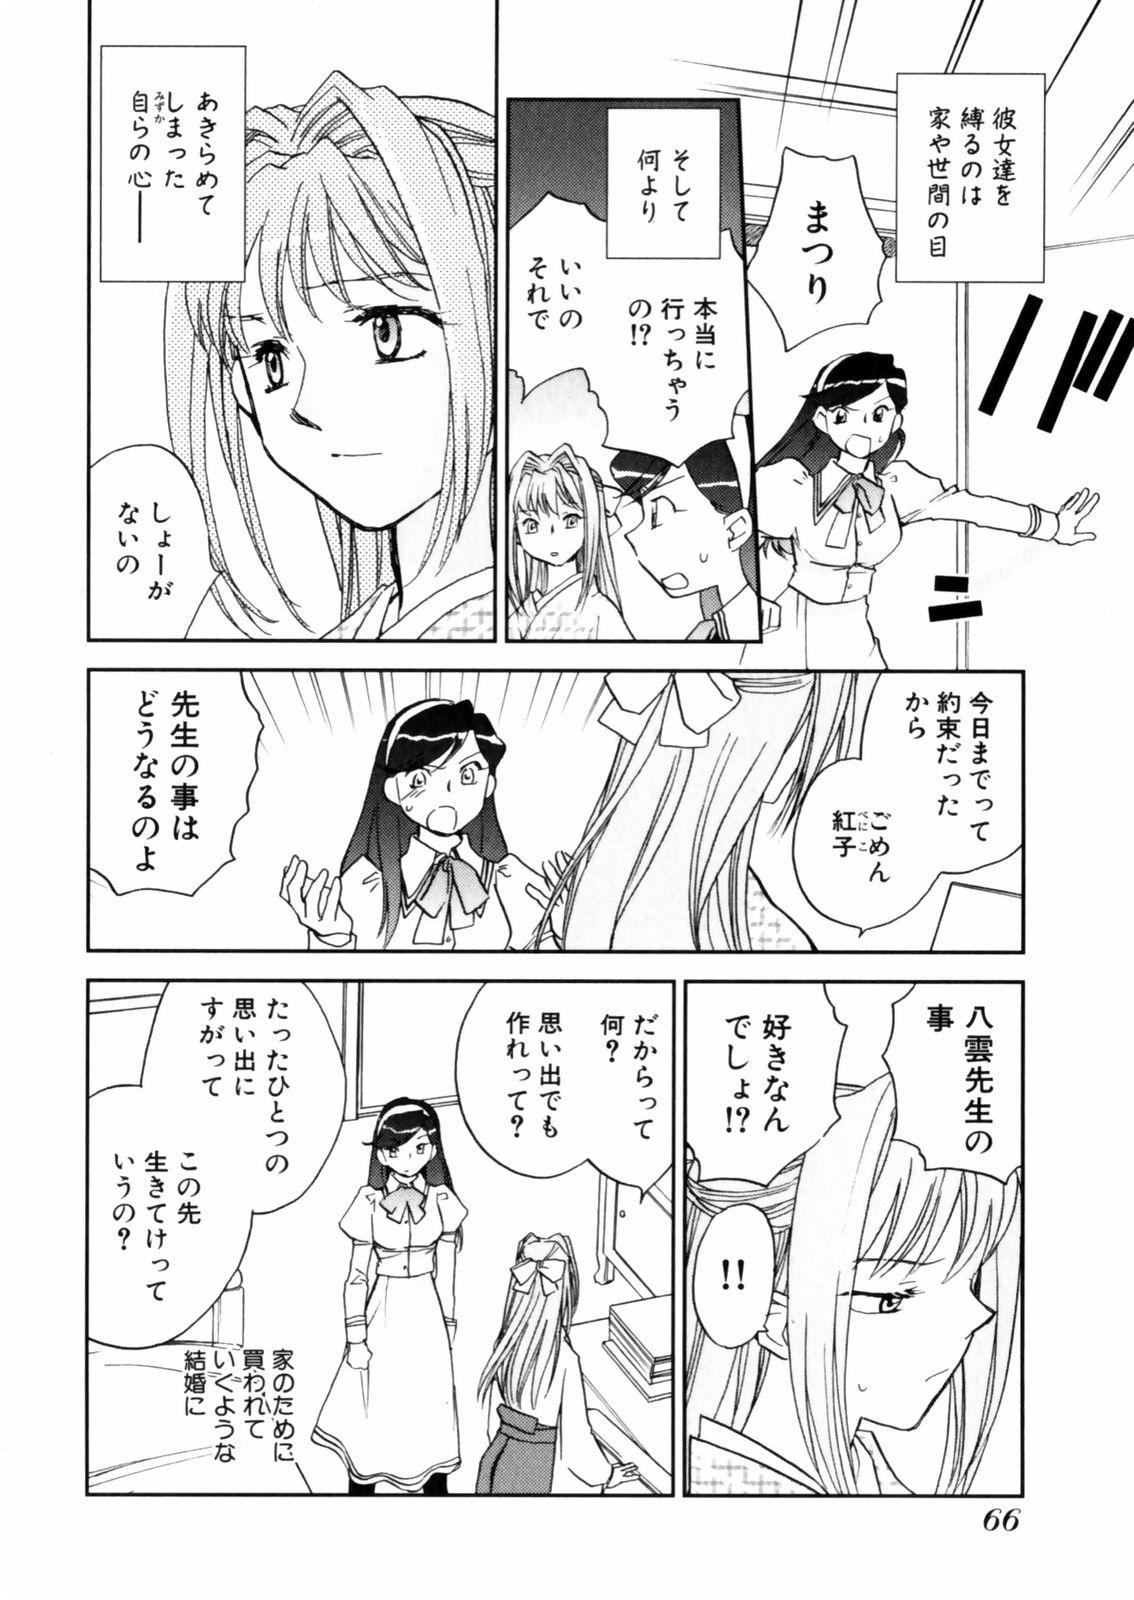 [Okano Ahiru] Hanasake ! Otome Juku (Otome Private Tutoring School) Vol.2 67